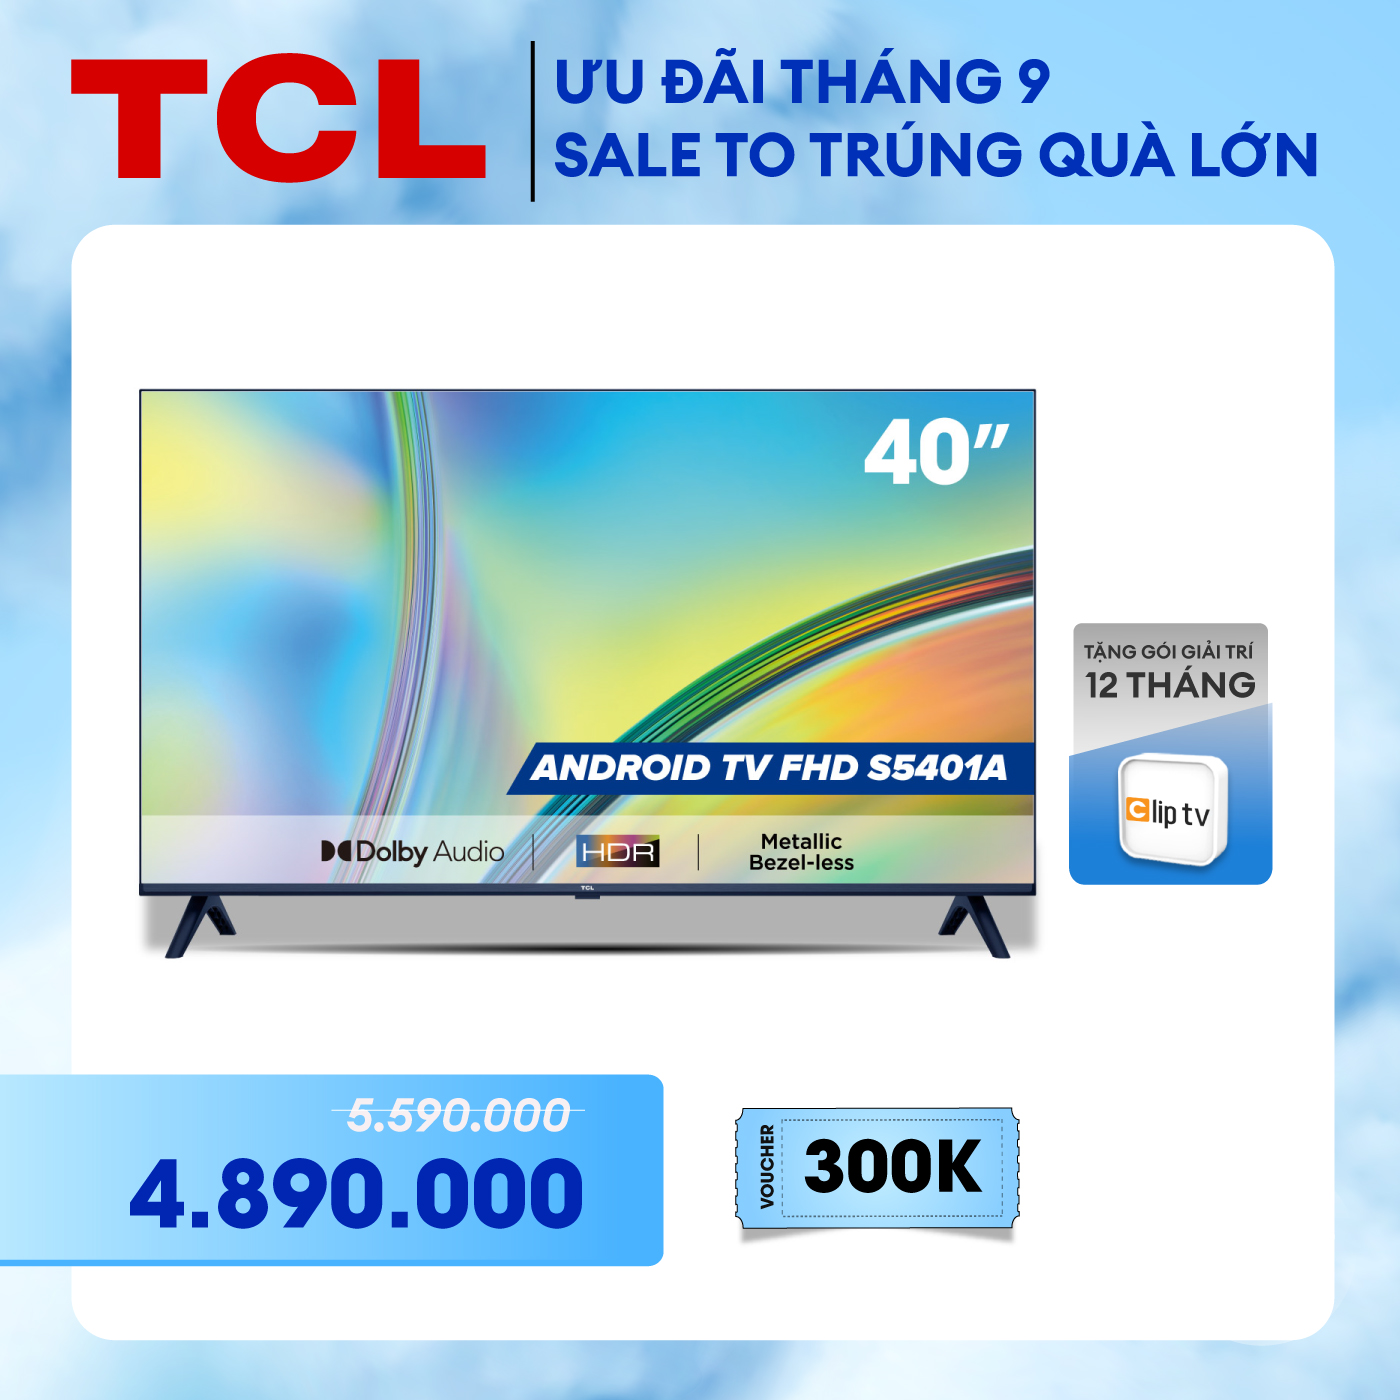 Android TV FHD TCL 40inch - 40S5401A - Smart TV - Hàng chính hãng - Bảo hành 2 năm - Nhà bán hàng tự giao